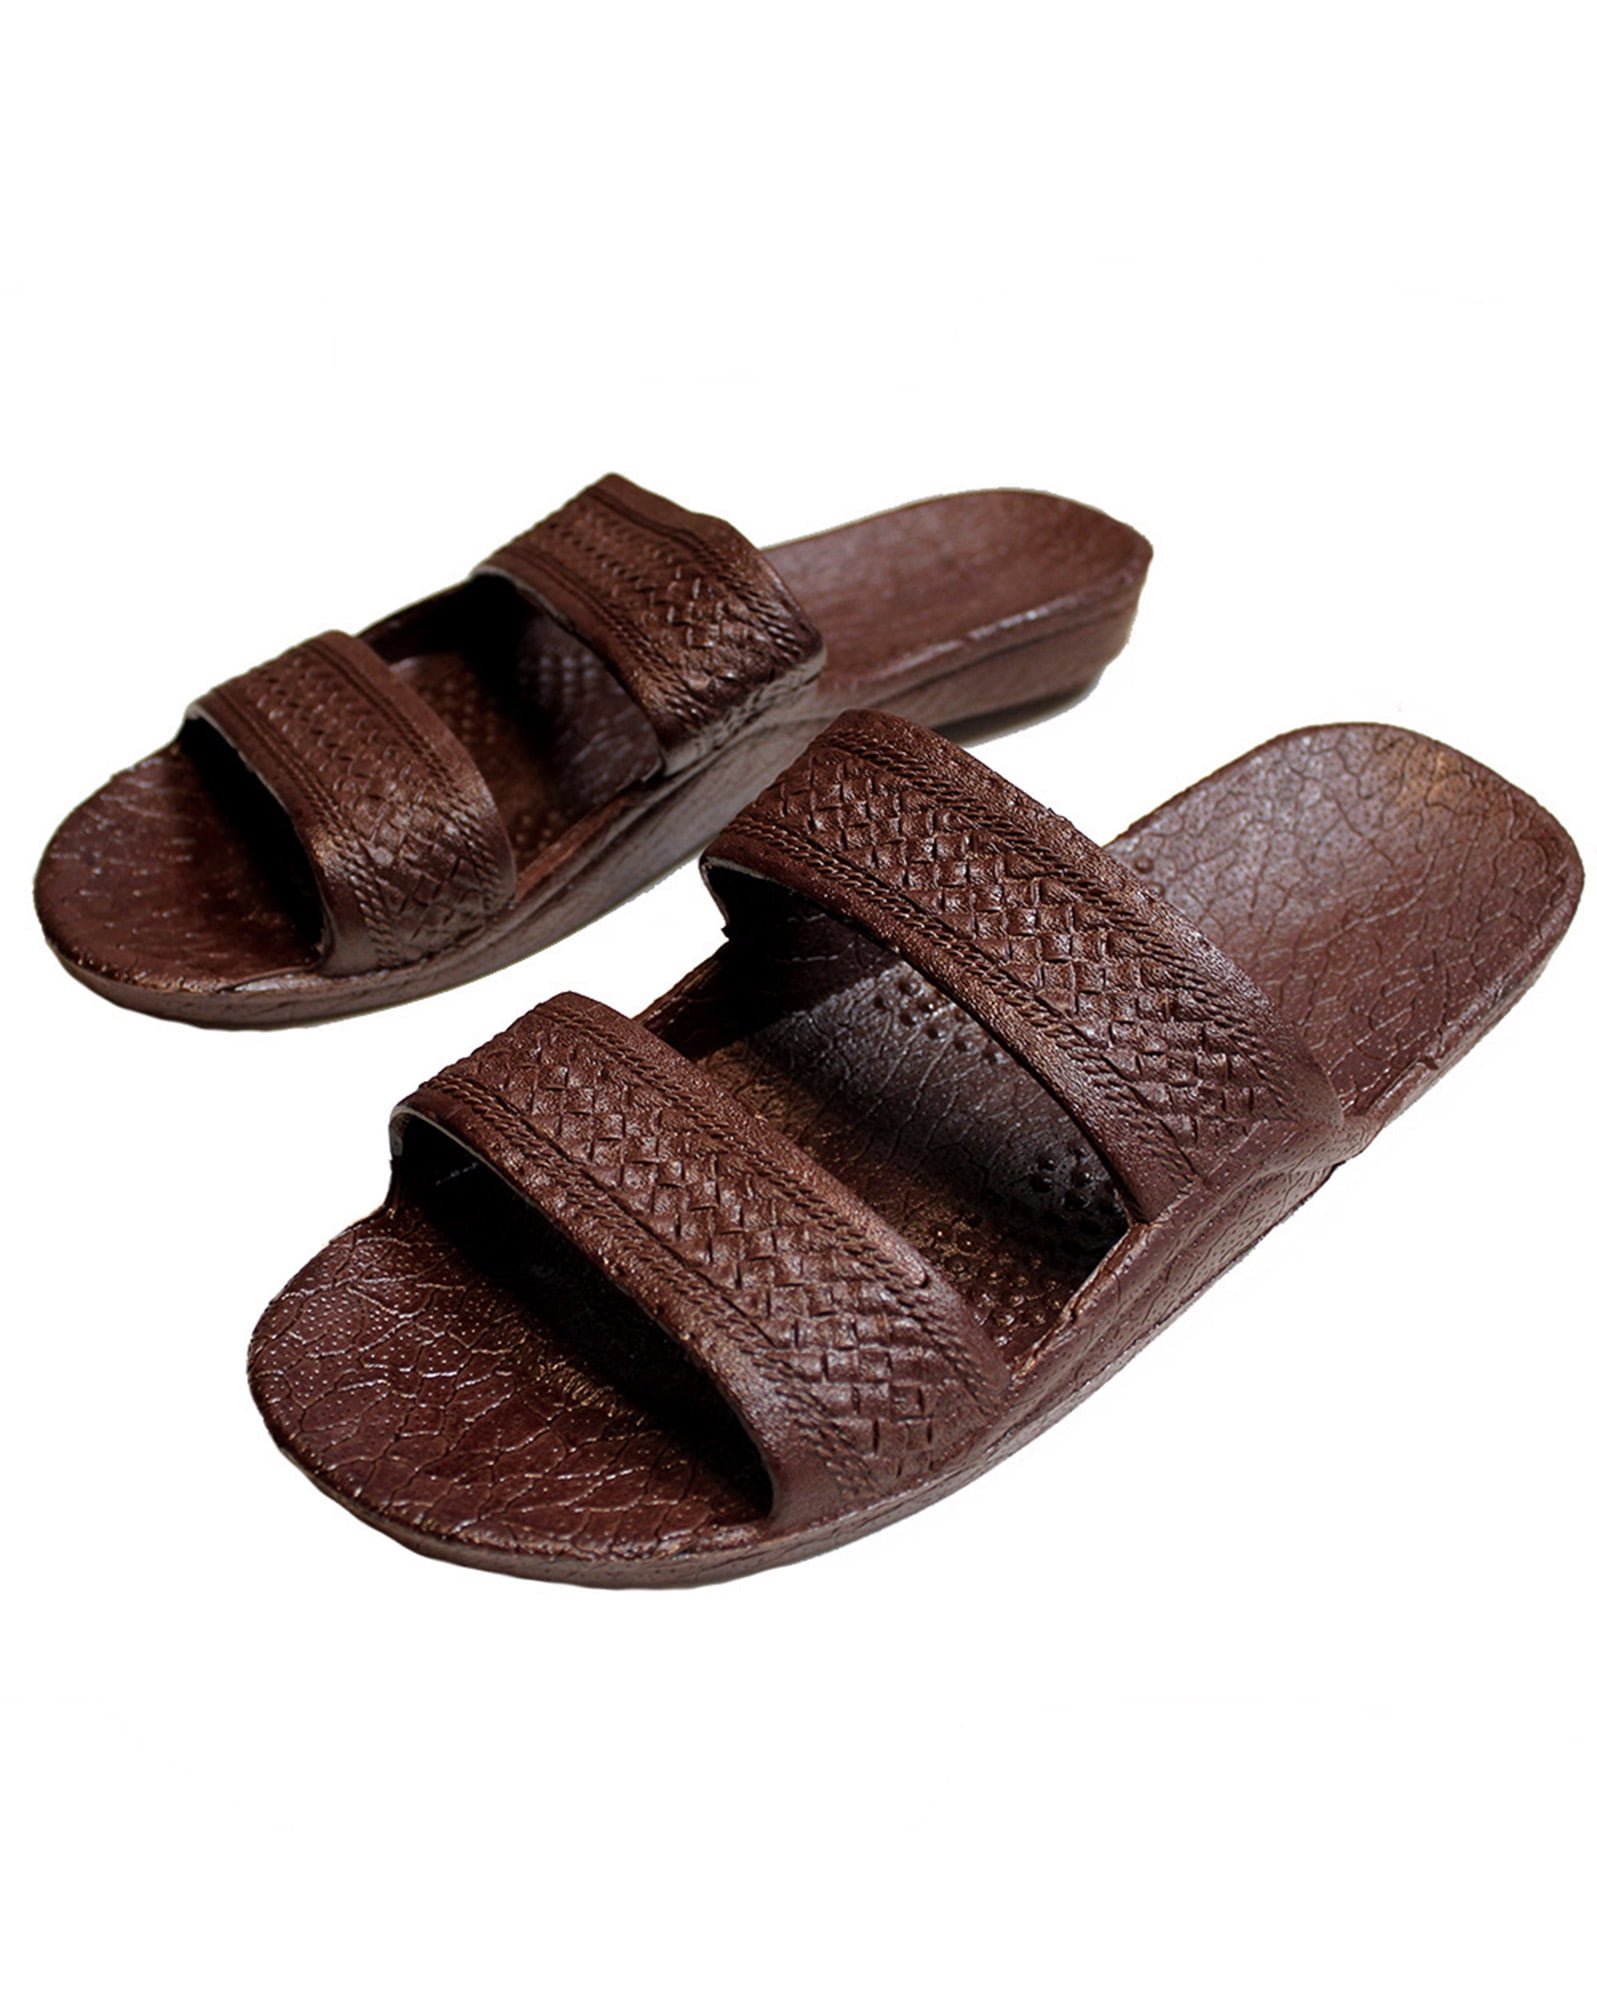 New Brown Rubber Hawaiian Hawaii Jesus Sandals Unisex Classics Pali Slippers